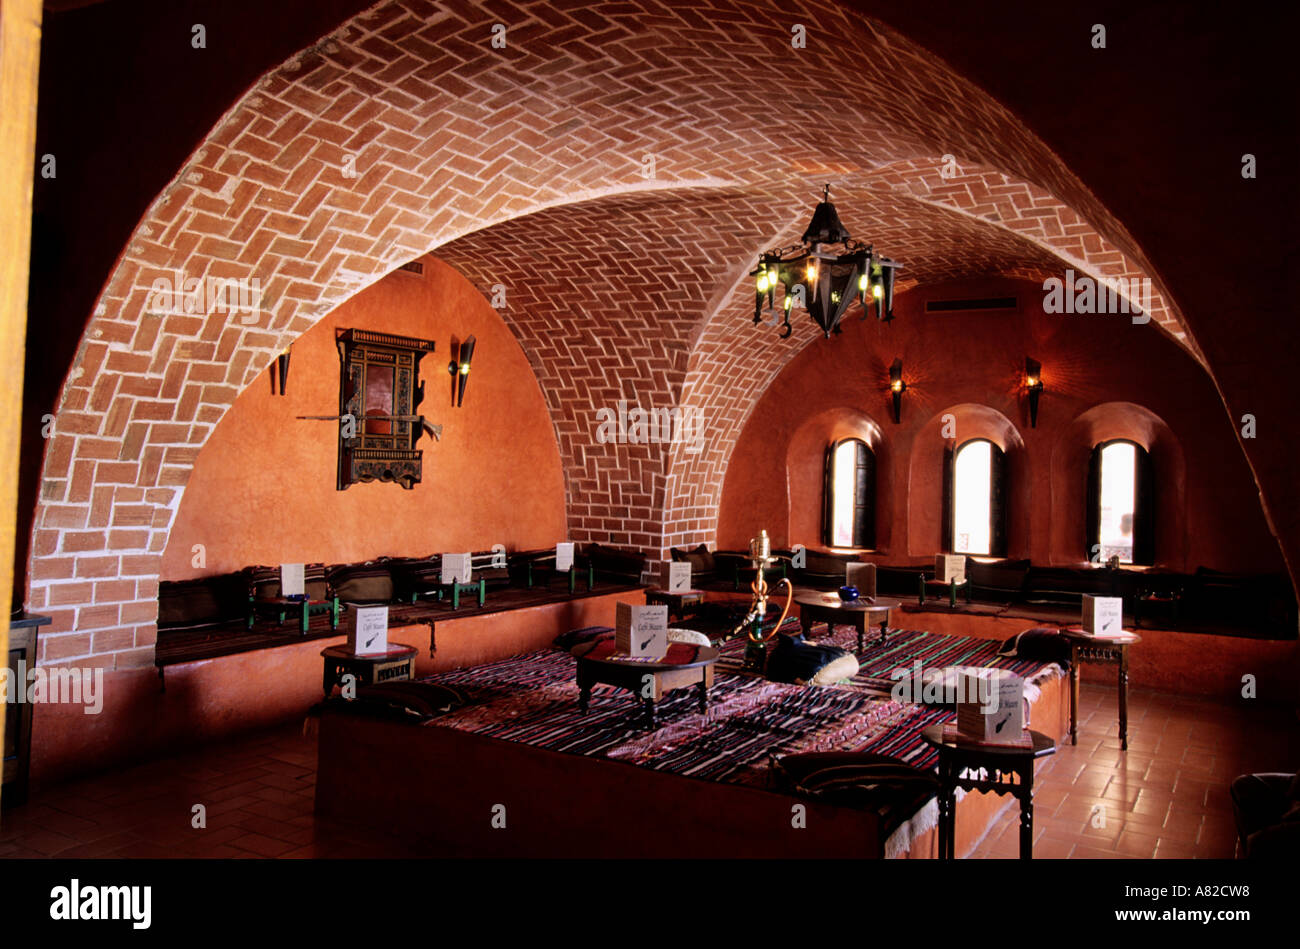 Tunisia, Djerba, Zarzis, the Café Maure in Odyssée hotel Stock Photo